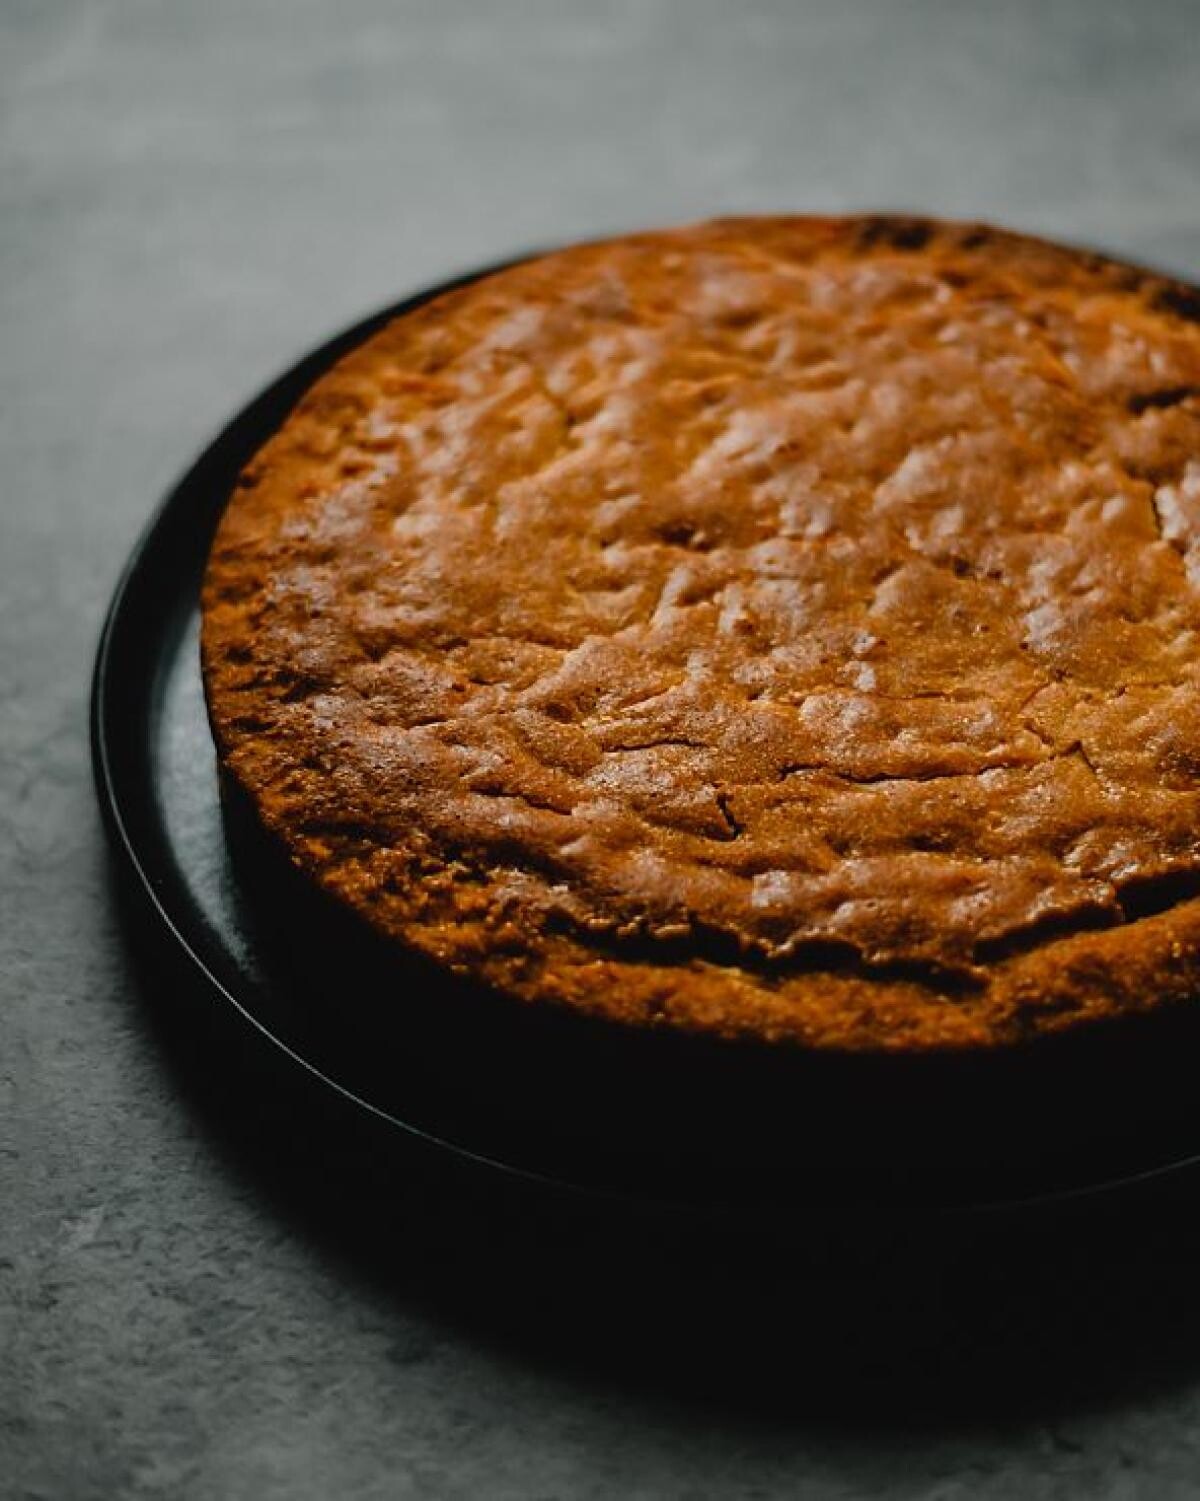 Prăjitură de ciocolată, cu făină integrală și fără ouă, un desert sățios și delicios. Sursa - Pexels